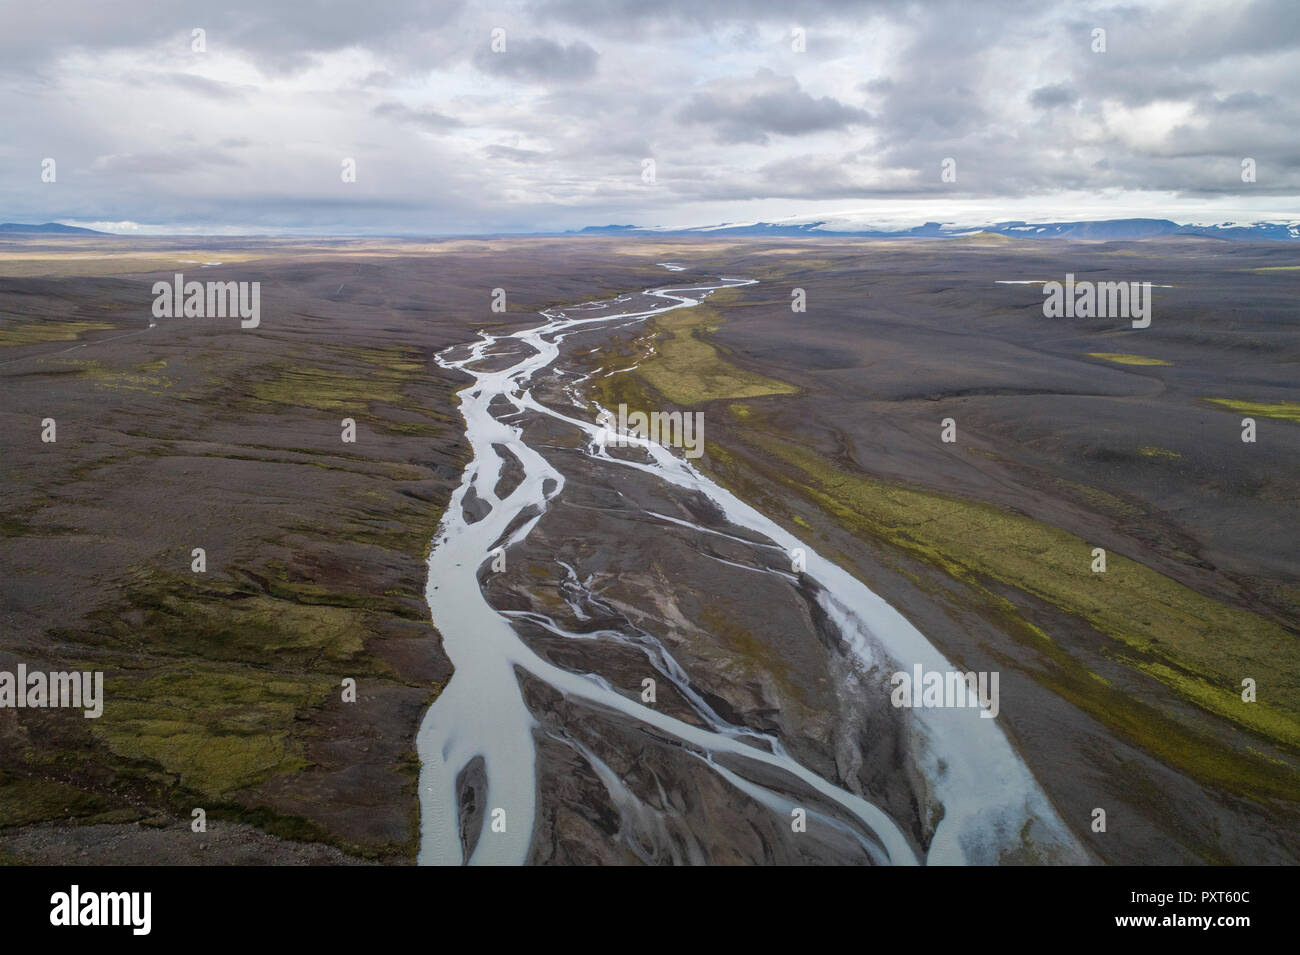 Meandering river in volcanic landscape, highlands of Norðurland vestra, Iceland Stock Photo